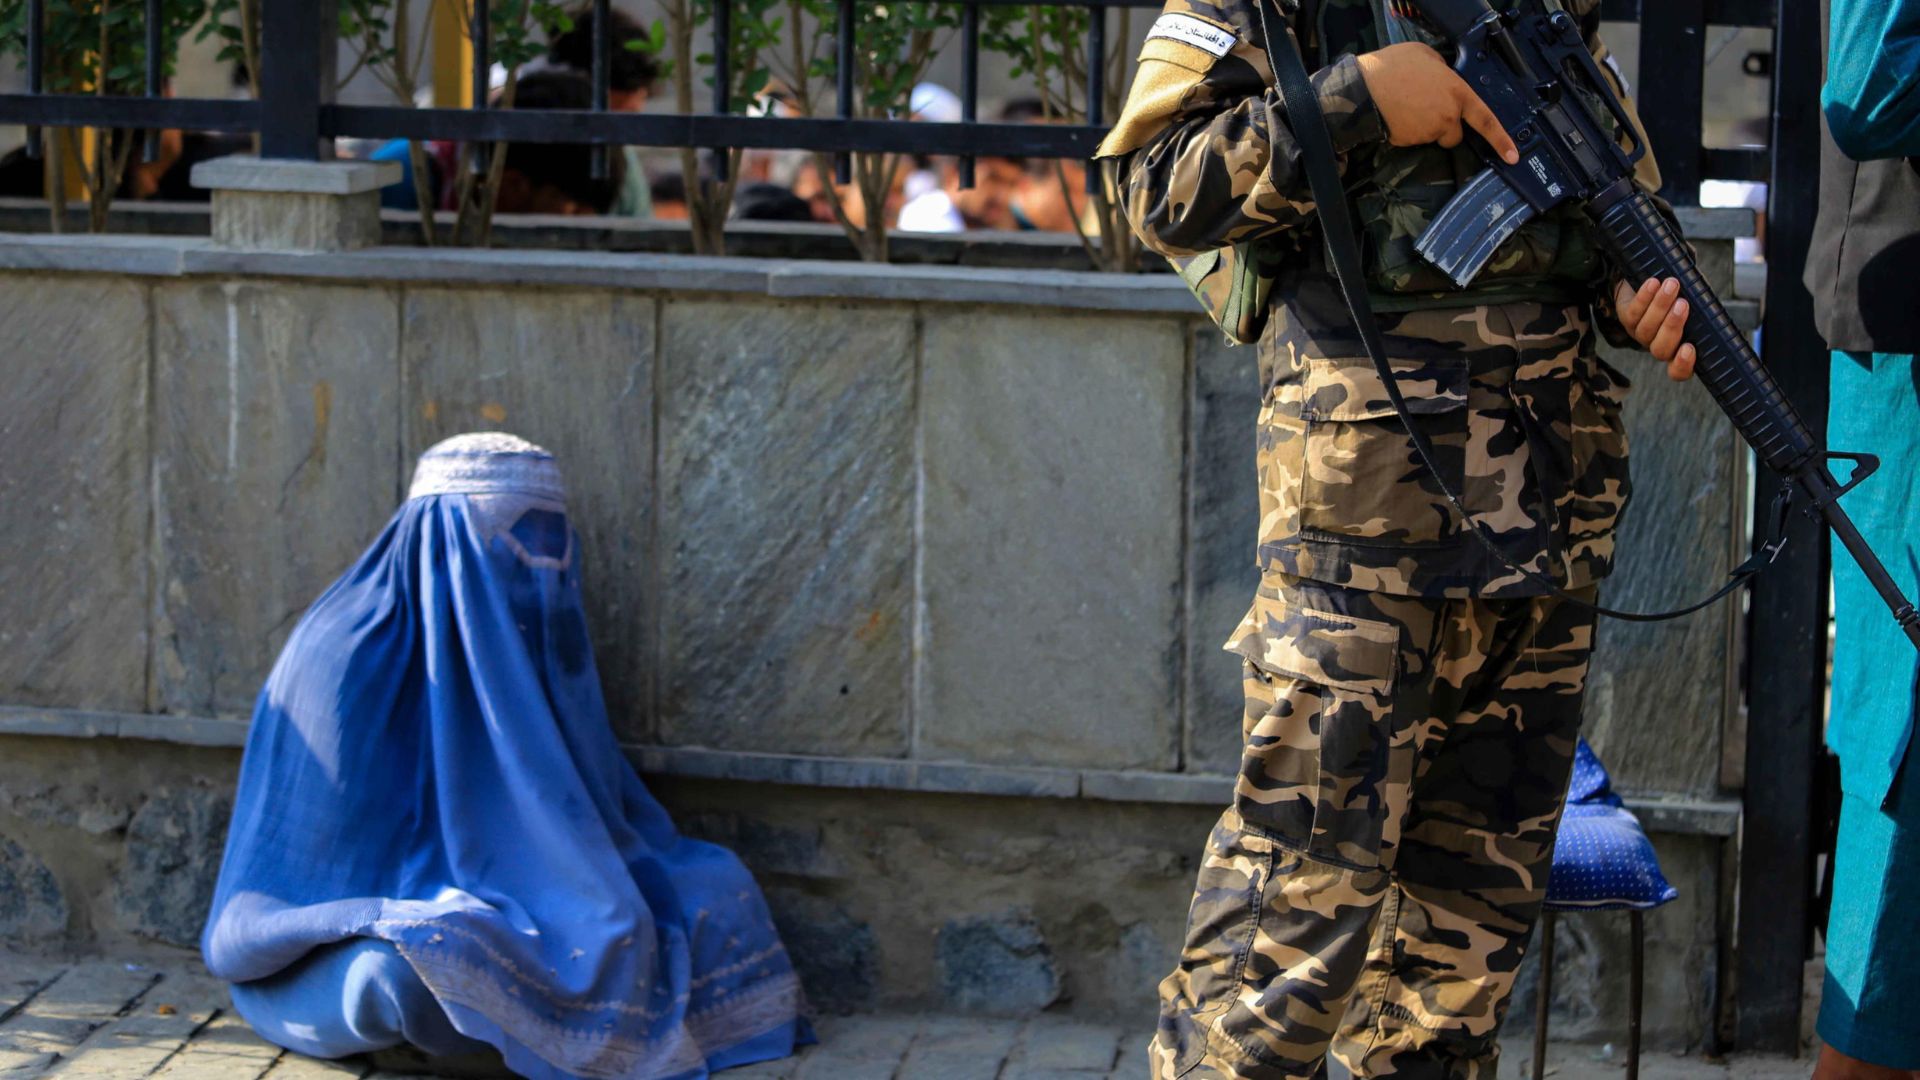 Afghanistan - Una donna afgana, con indosso il burqa, chiede l'elemosina mentre i talebani fanno la guardia in un luogo pubblico a Kabul, Afghanistan, il 27 luglio 2022.